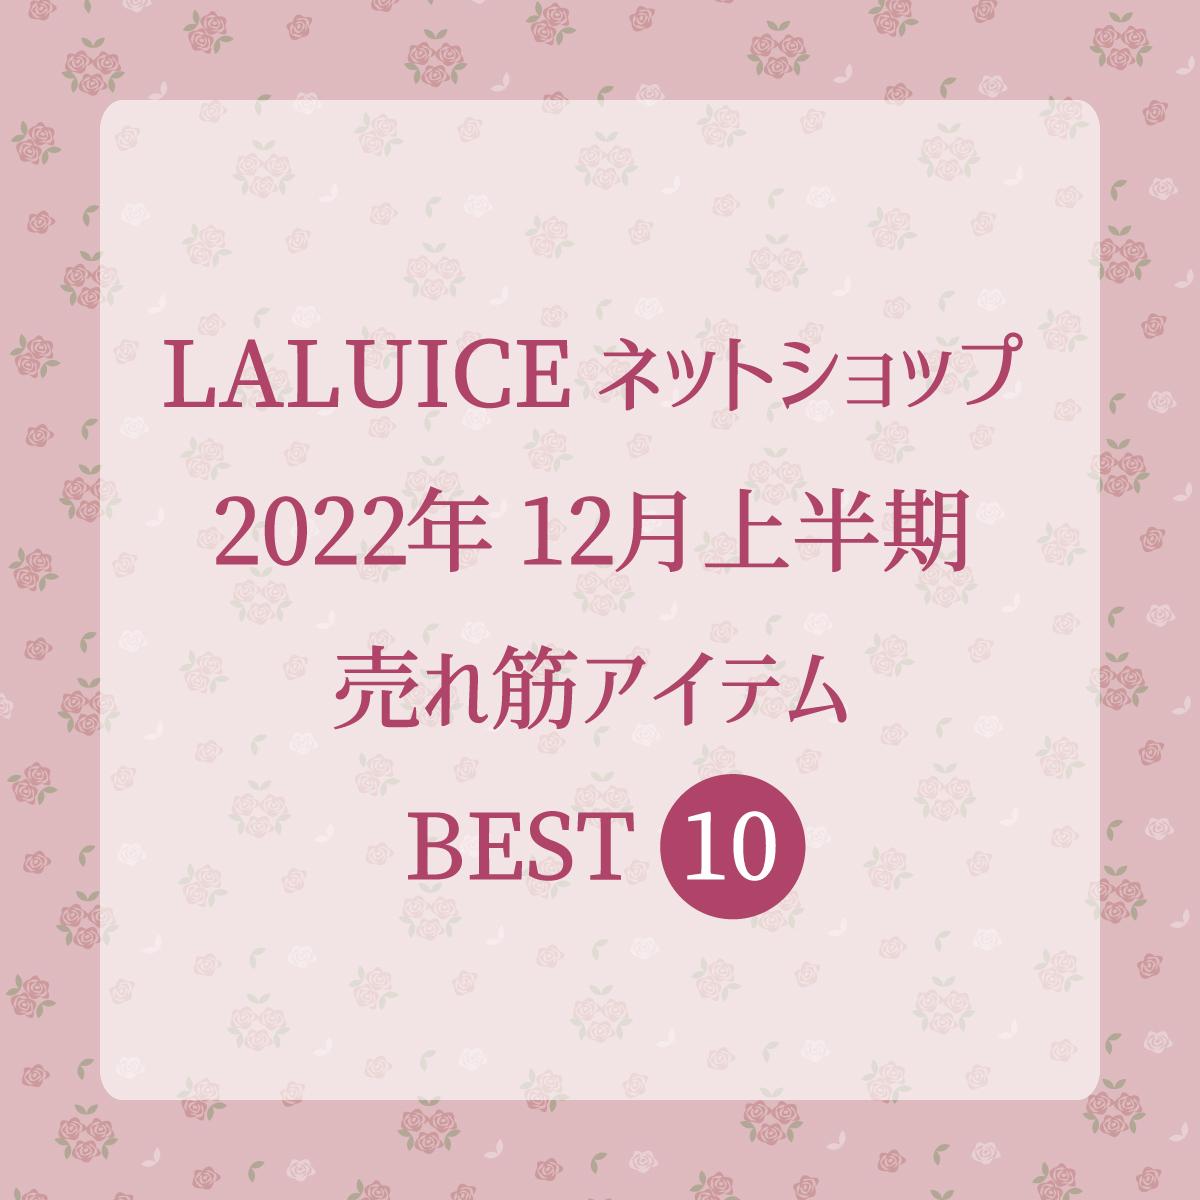 2022年12月上半期(12/1～12/15) LALUICEネットショップ売れ筋アイテム BEST10